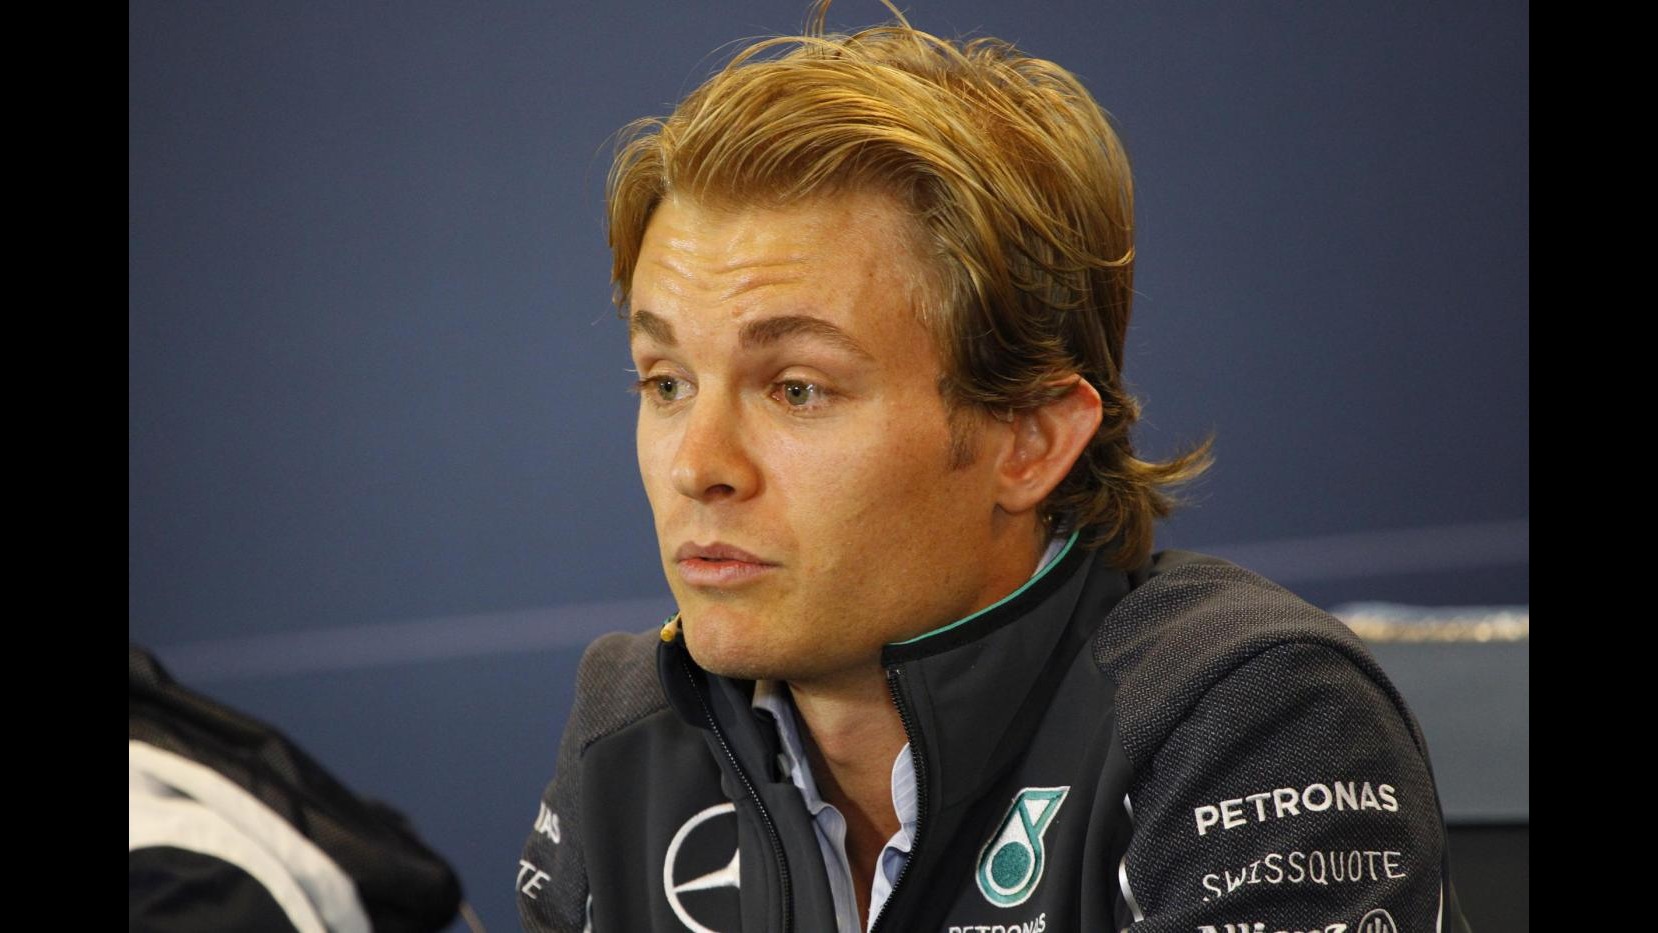 F1, Gp Belgio: Rosberg il più veloce in prime libere, terzo Alonso